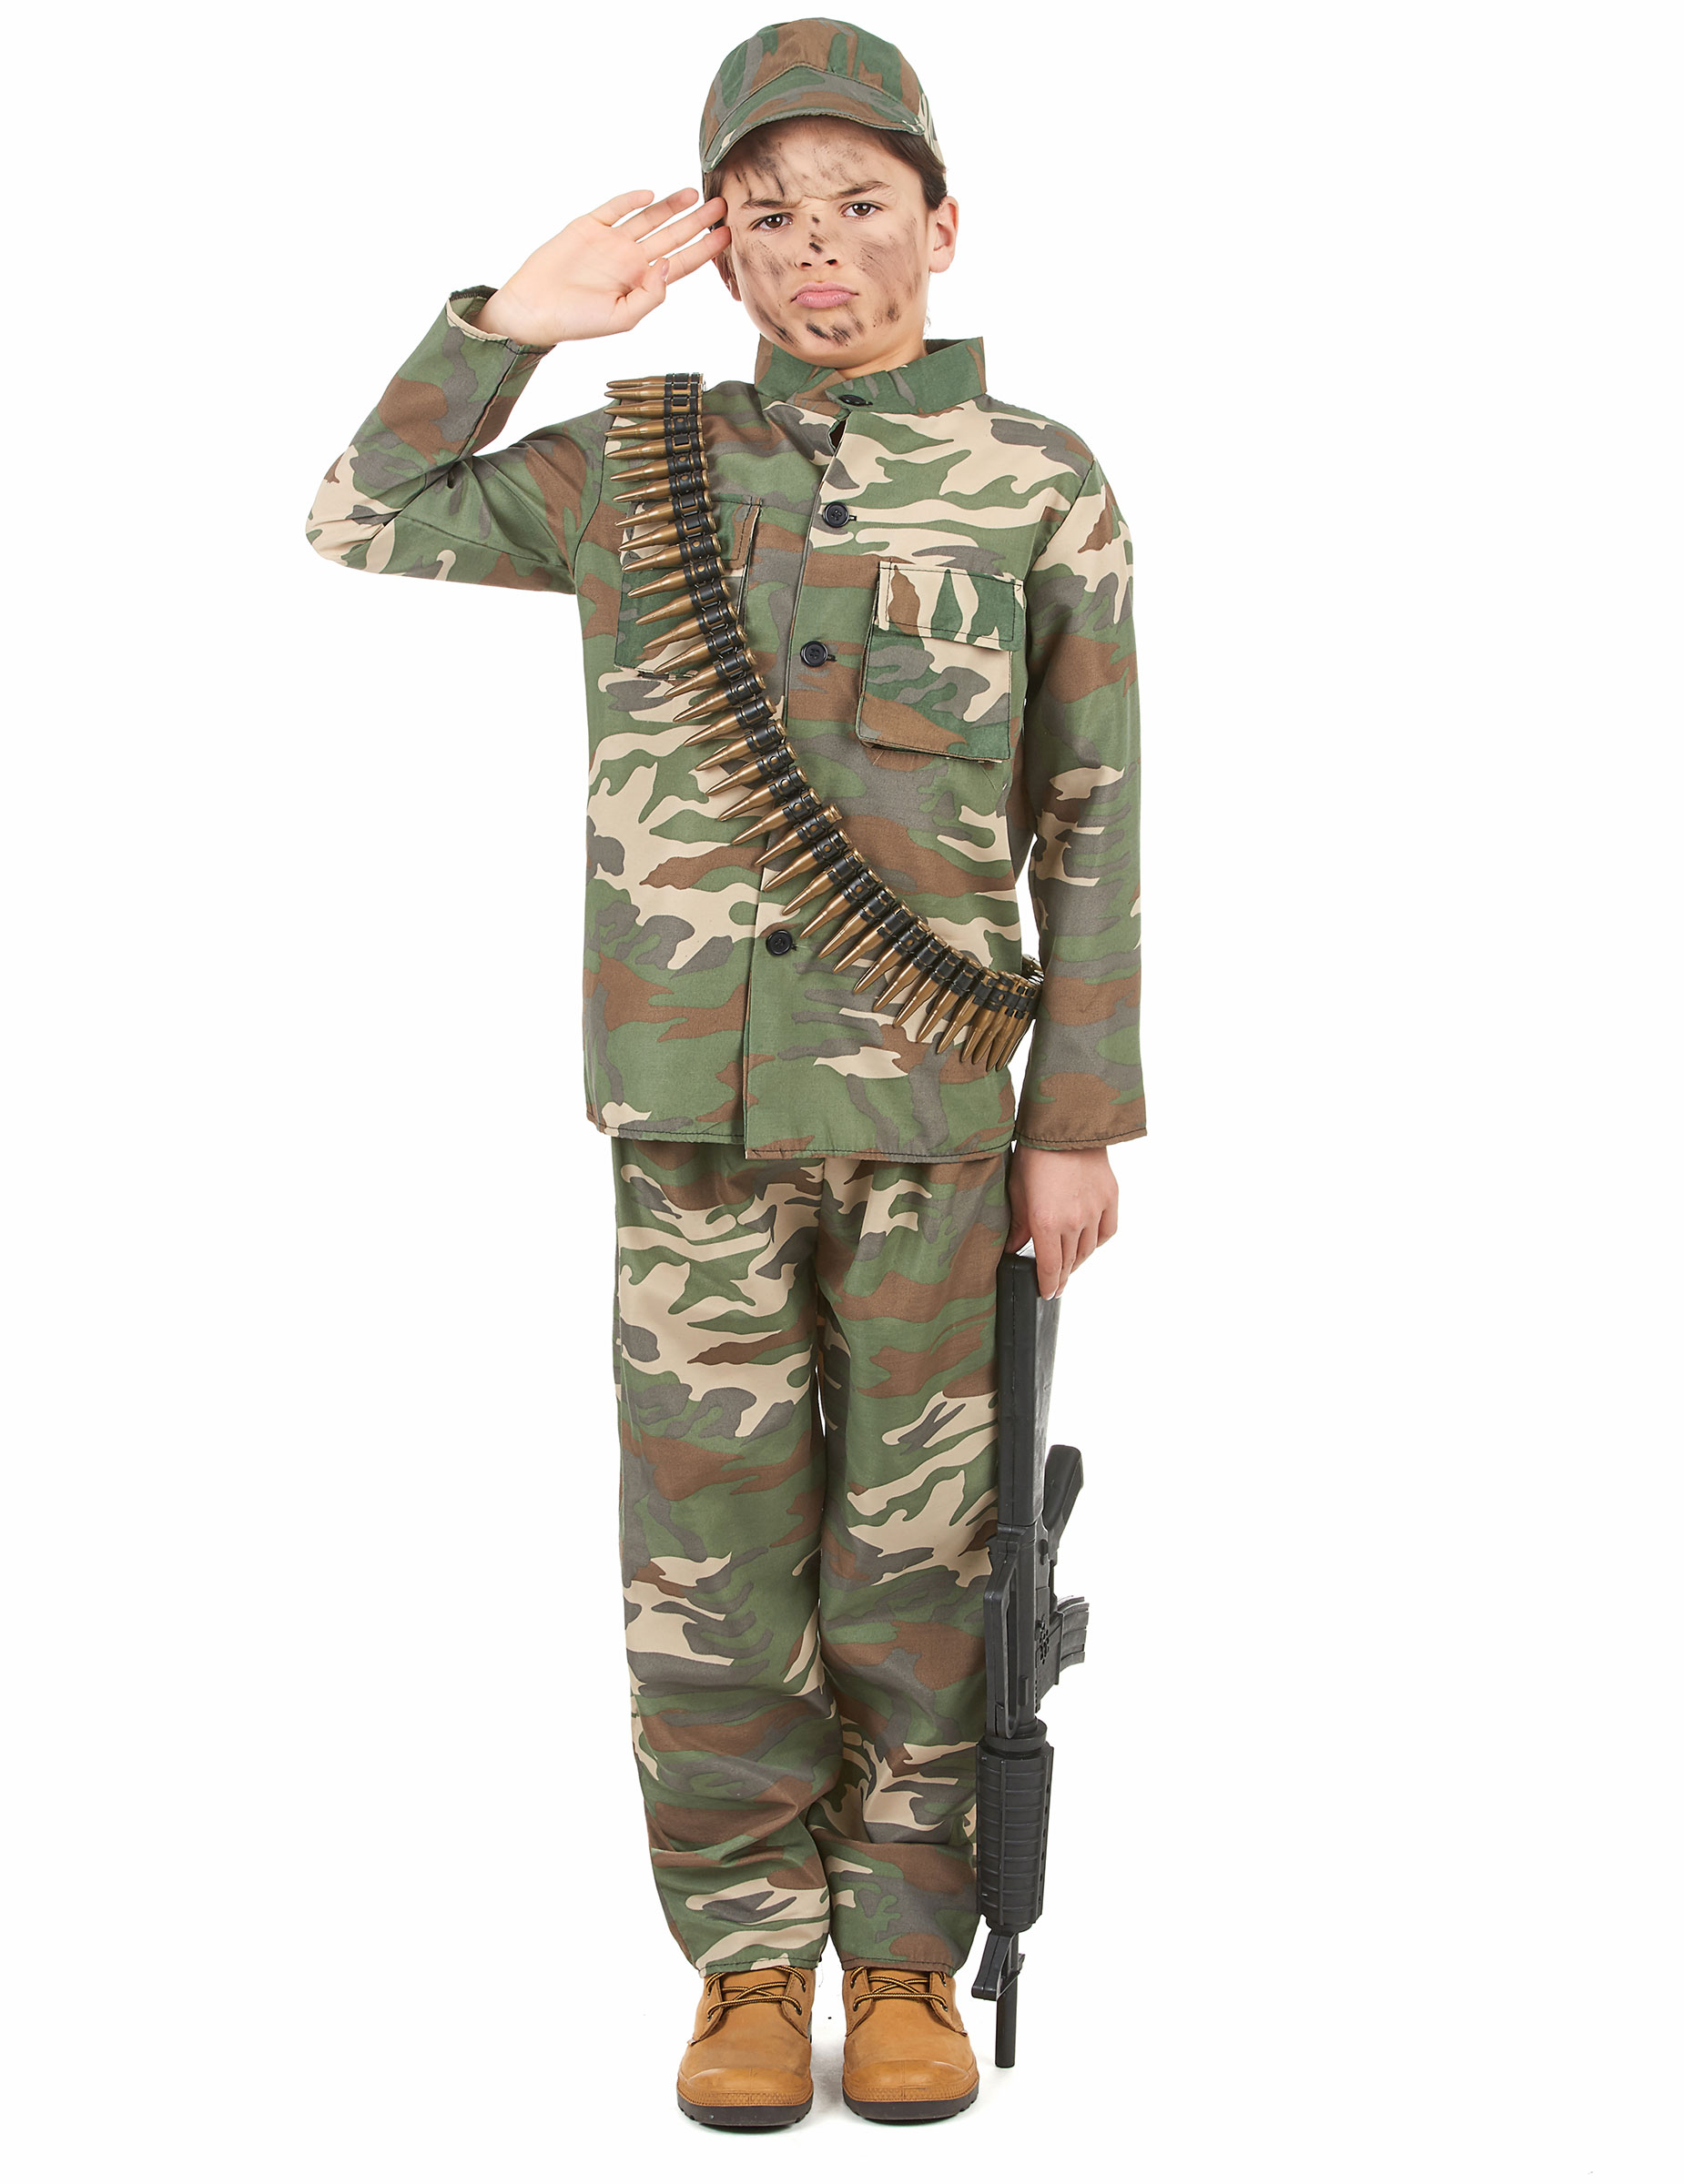 Tapferer Soldat Kinderkostüm camouflage von KARNEVAL-MEGASTORE